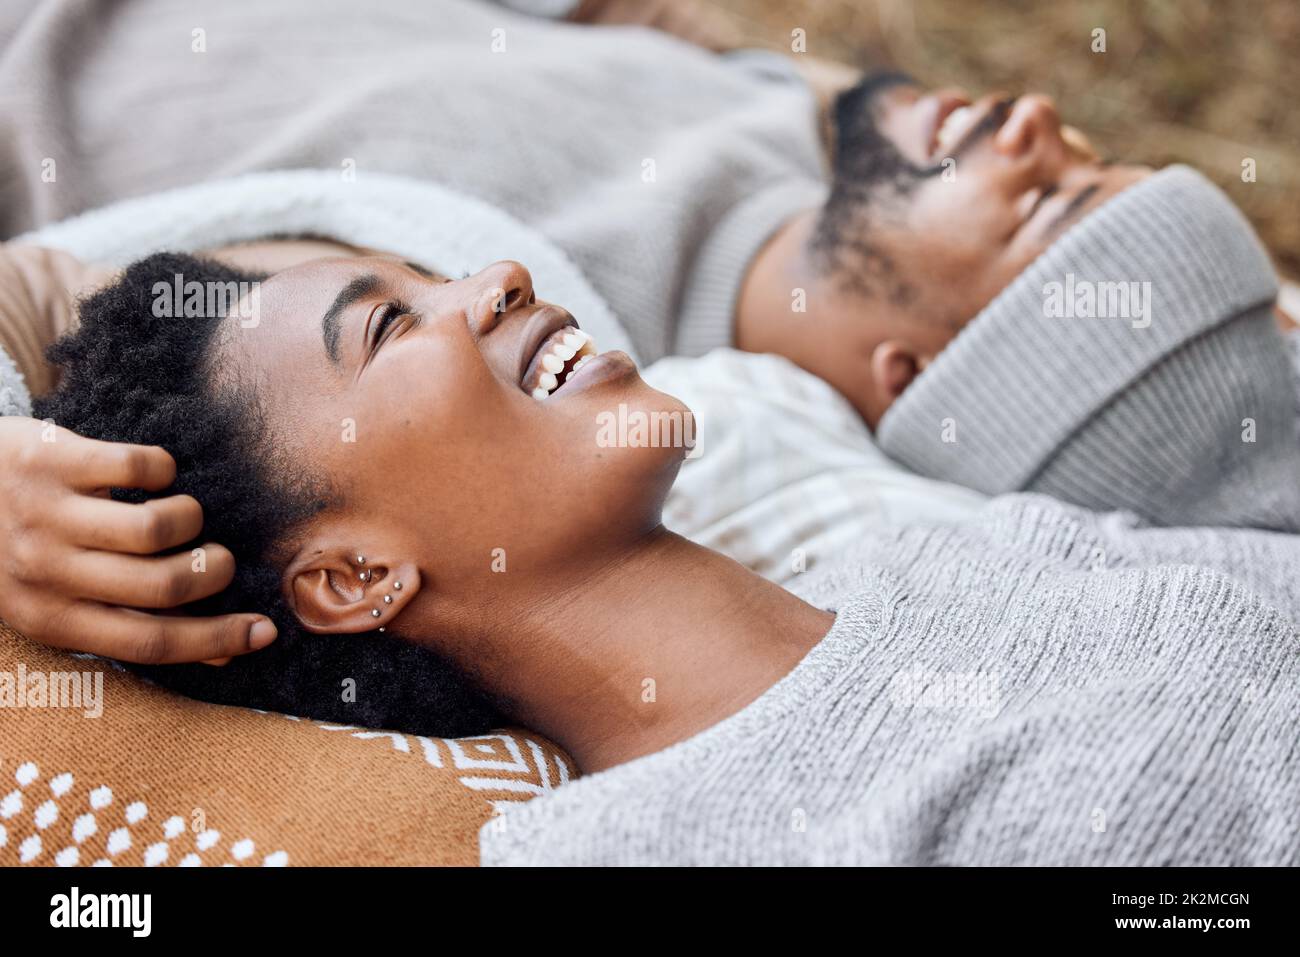 Il vostro punto di vista è sempre così illuminante. Shot di una giovane coppia sdraiata insieme mentre si accampano. Foto Stock